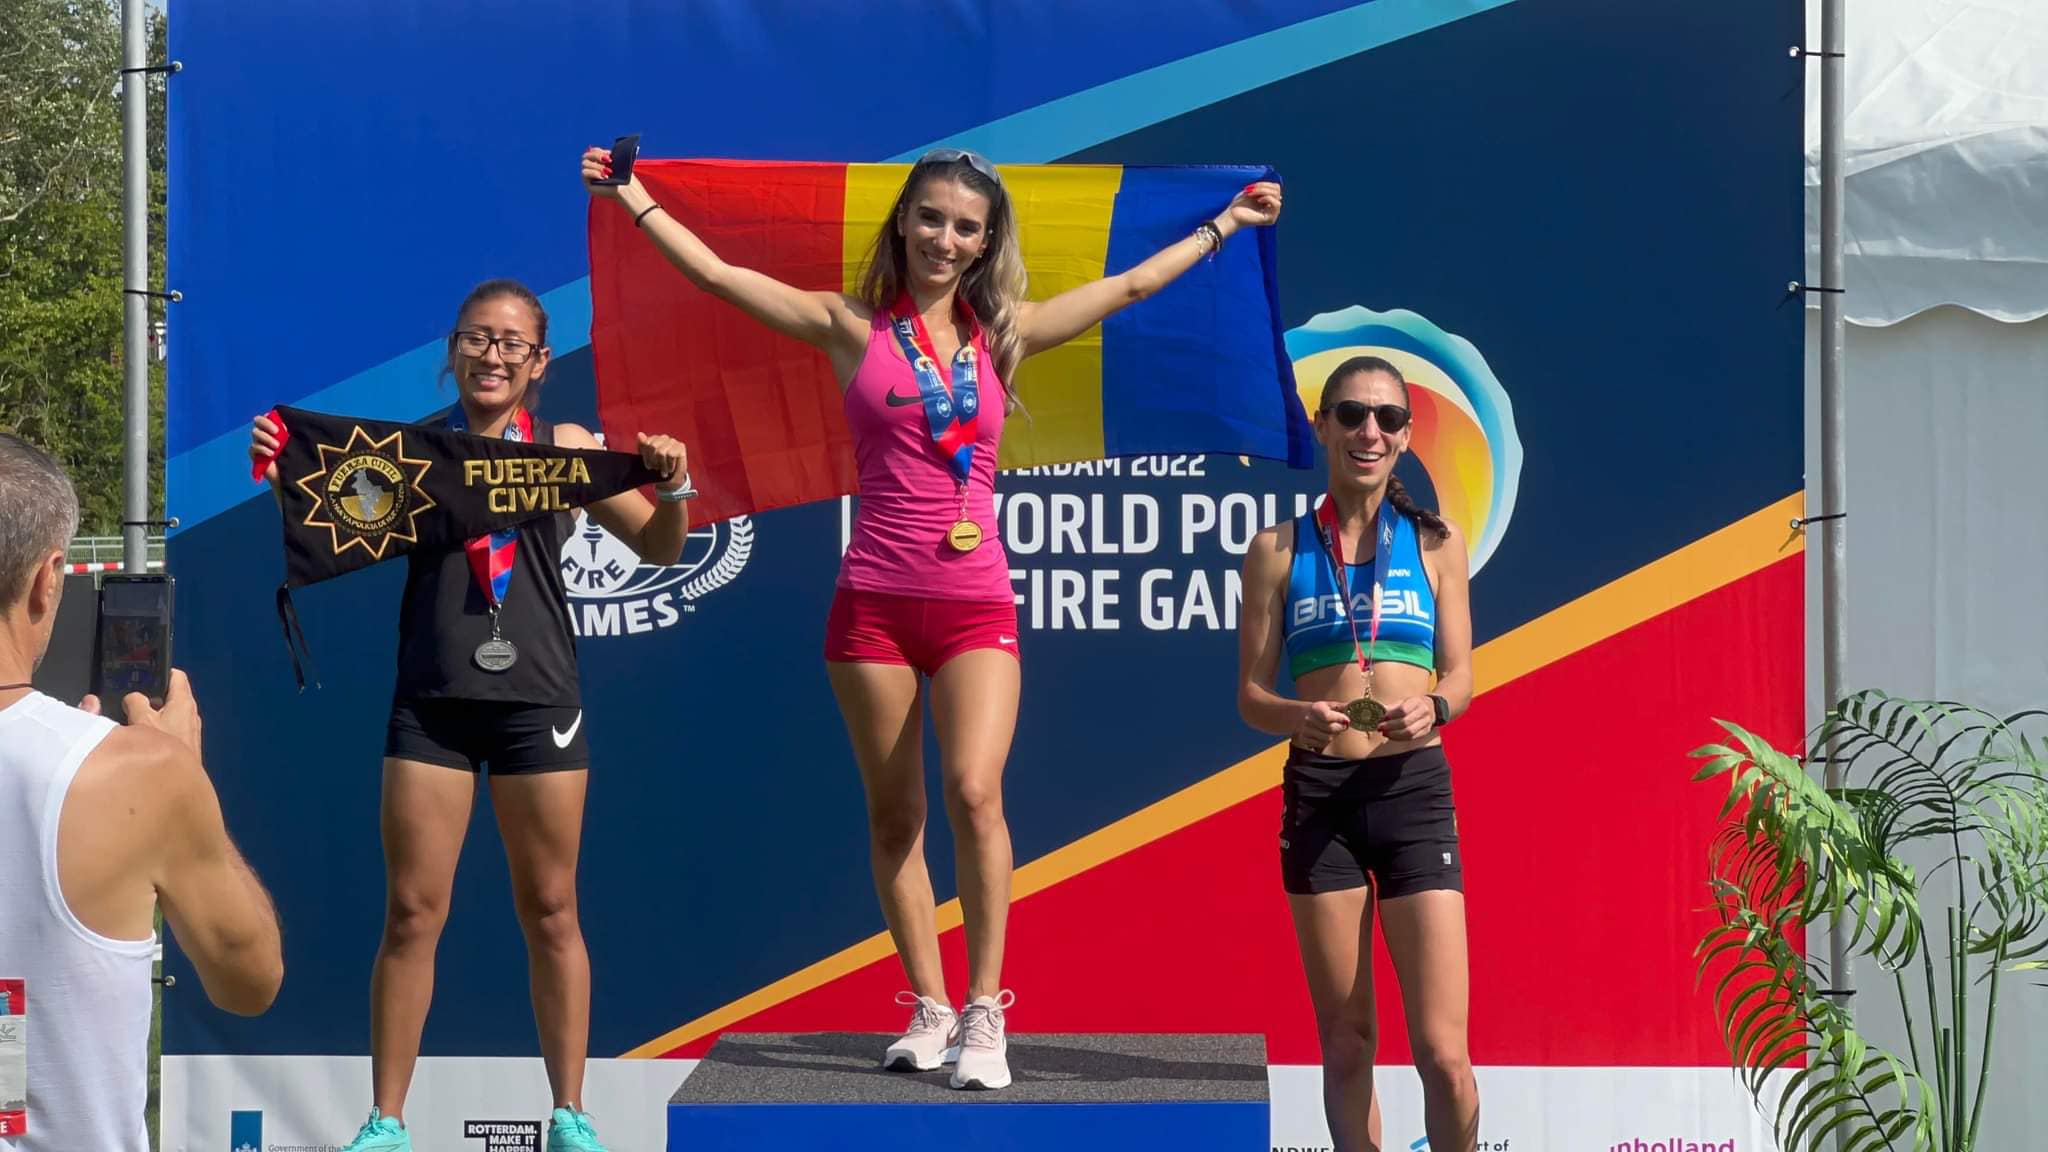 ''Ți se face pielea de găină când ești pe podium''. Denisa, o poliţistă din România, a dominat întrecerile de atletism din Rotterdam - a câştigat trei medalii de aur!